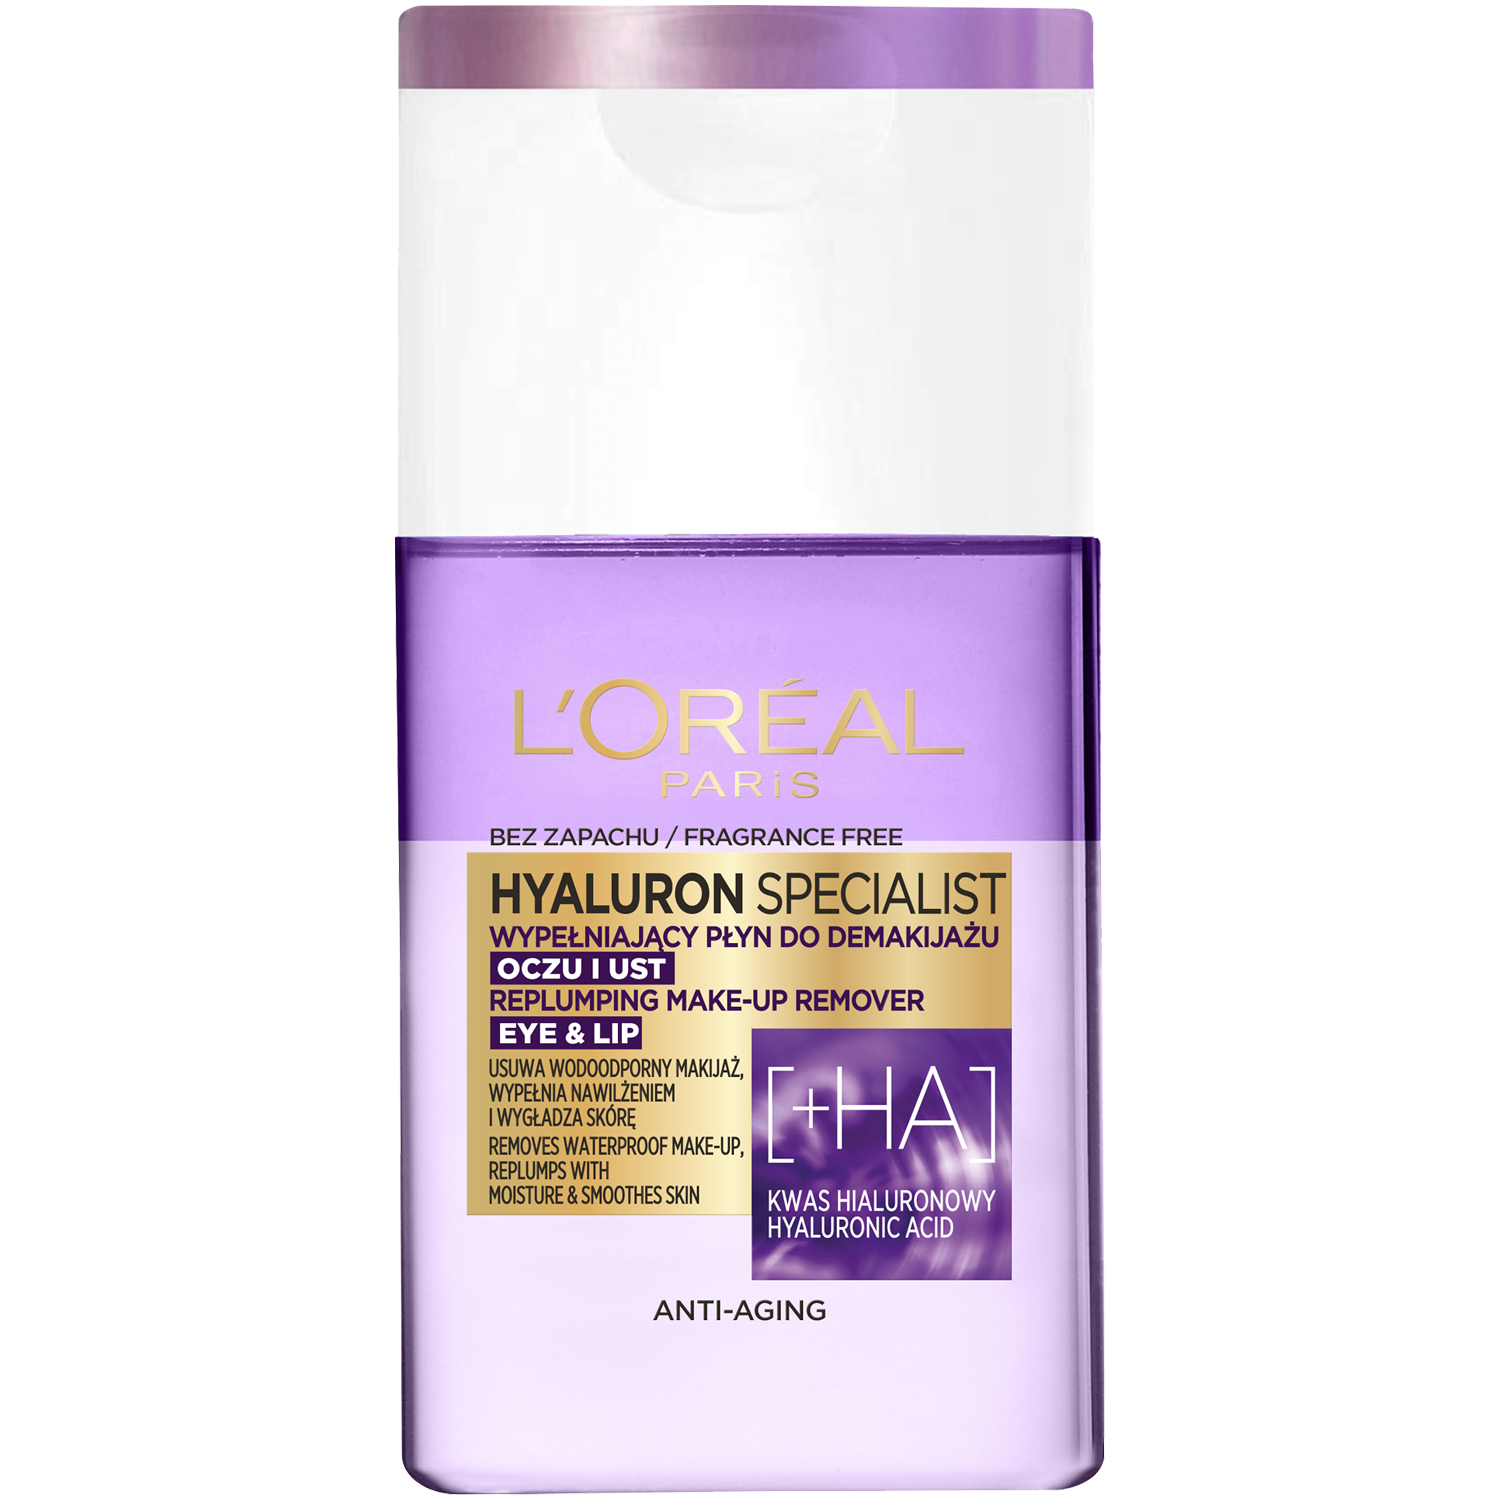 L'Oréal Paris Hyaluron средство для снятия макияжа, 125 мл l oreal paris средство для снятия макияжа с глаз 125 мл 125 г